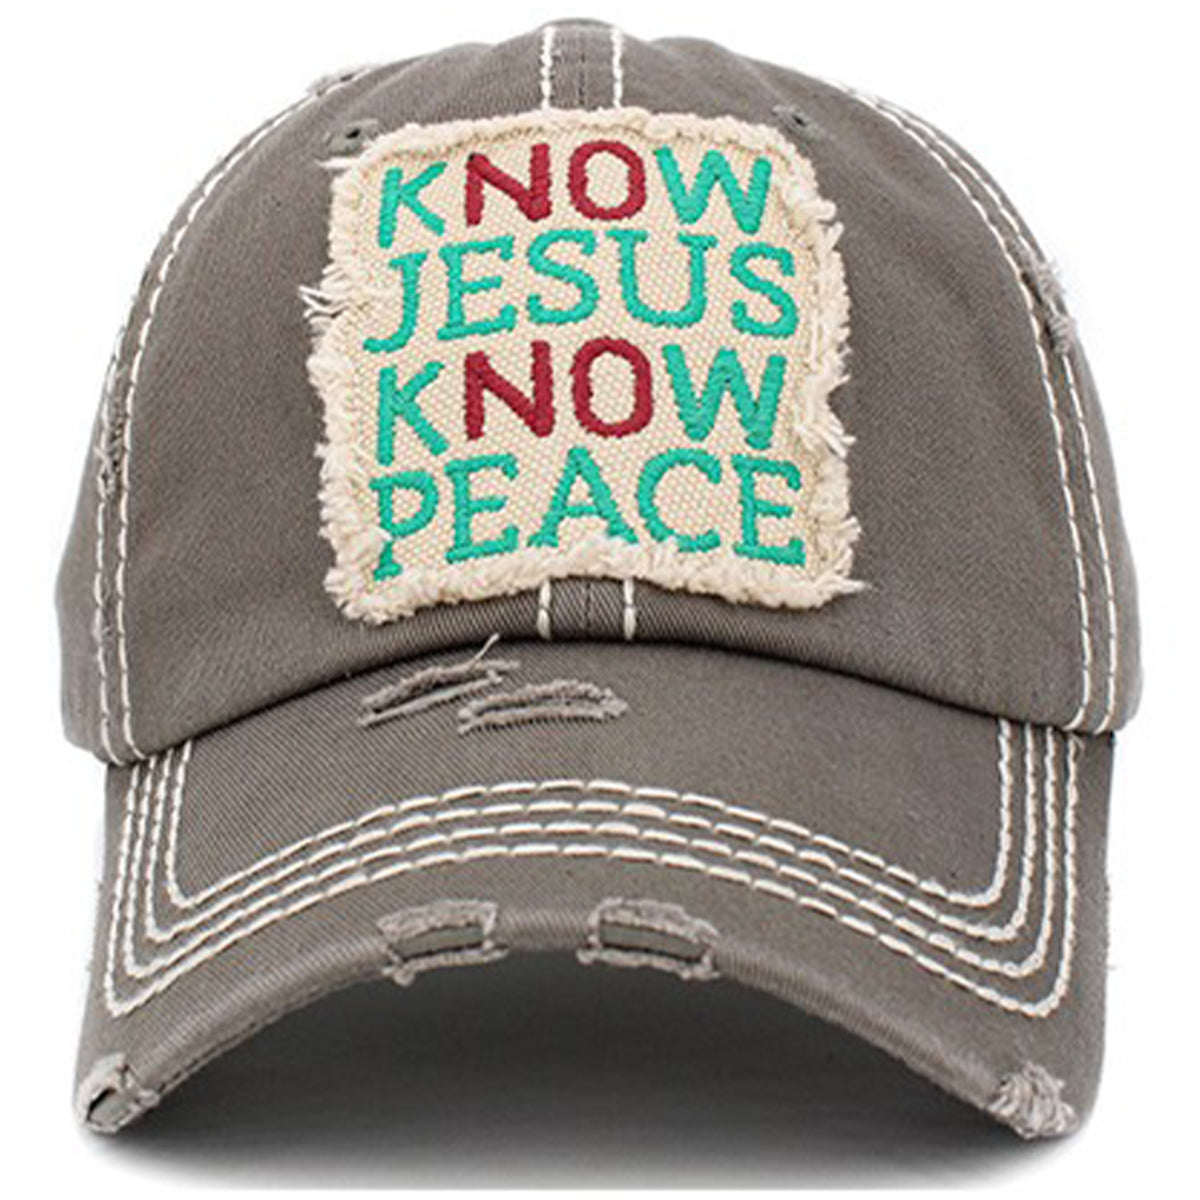 1402 - Know Jesus Know Peace Hat - Mos